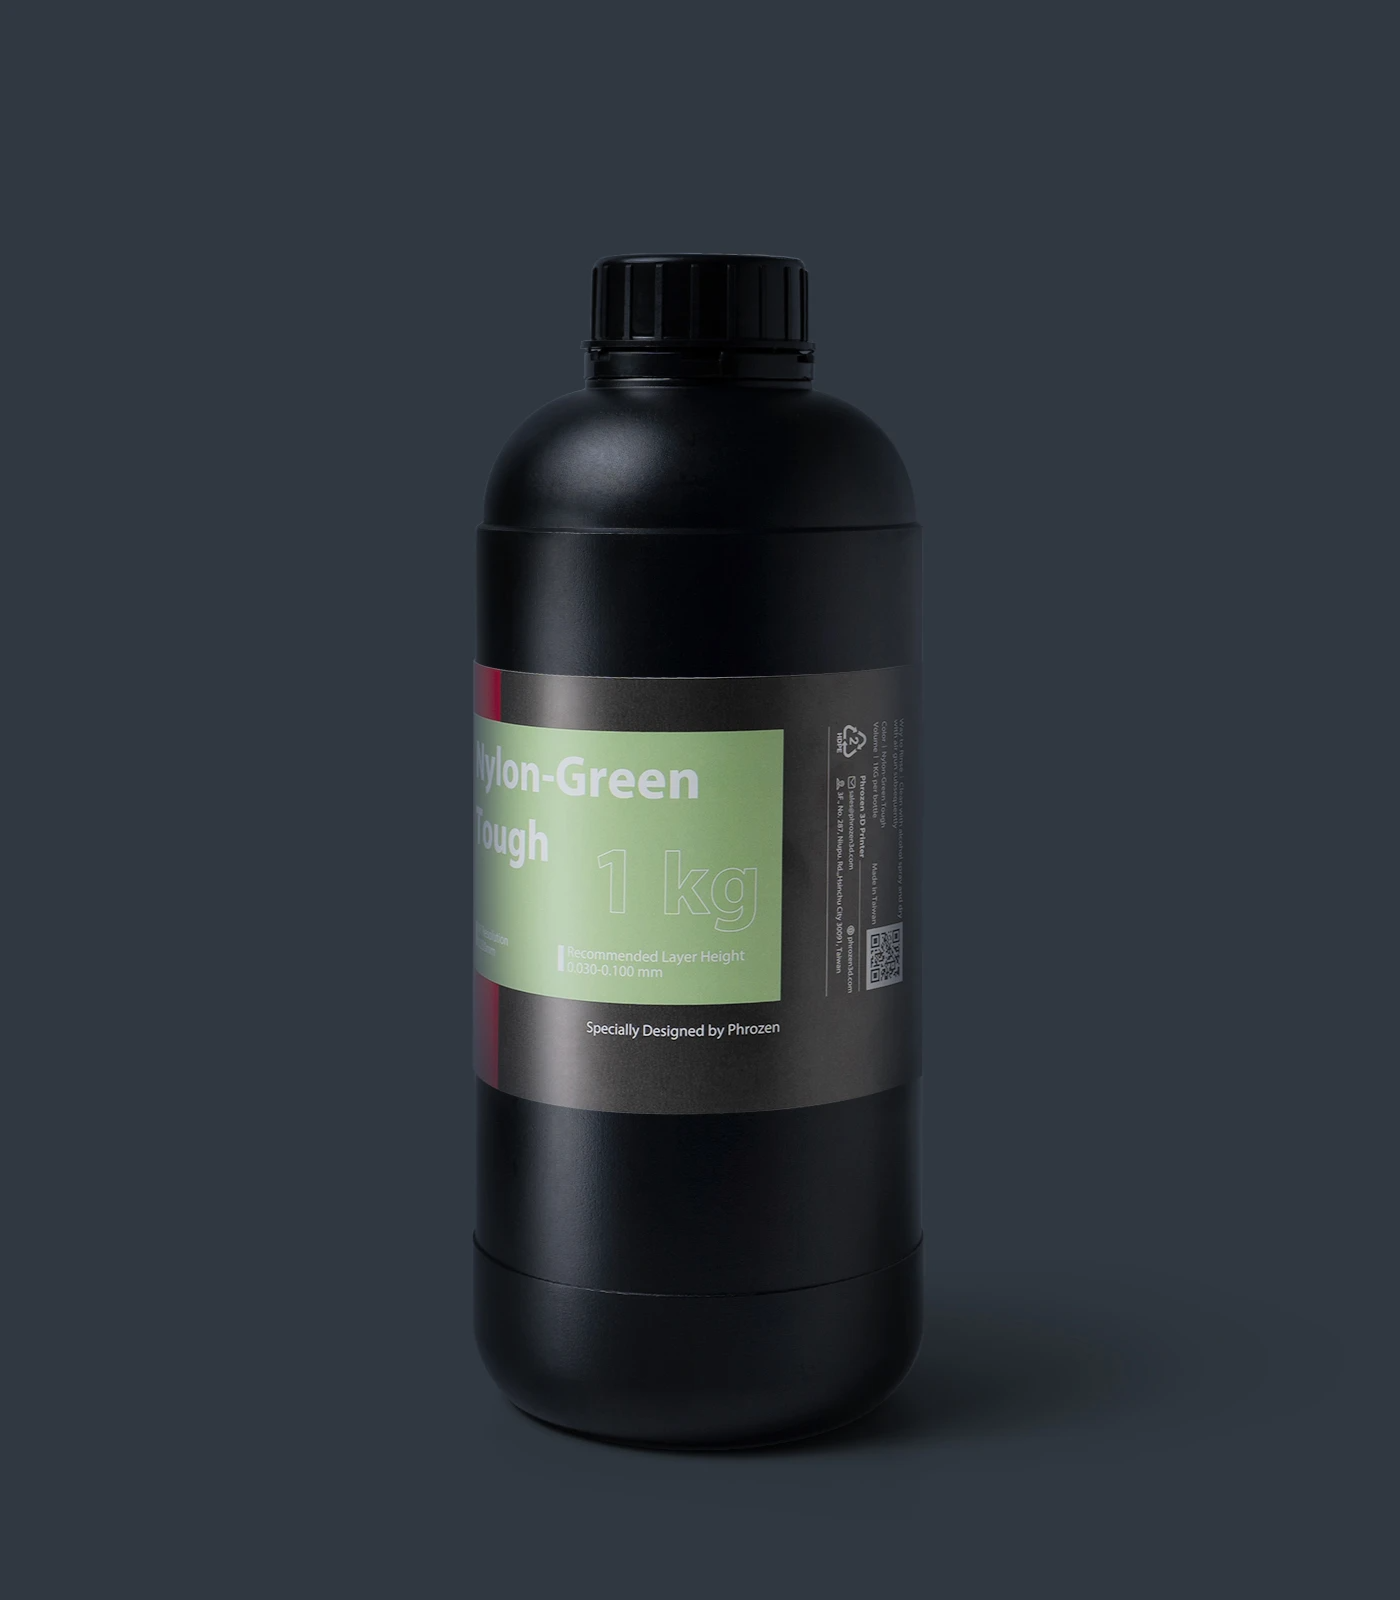 Phrozen Nylon-Green Tough Resin (1Kg)